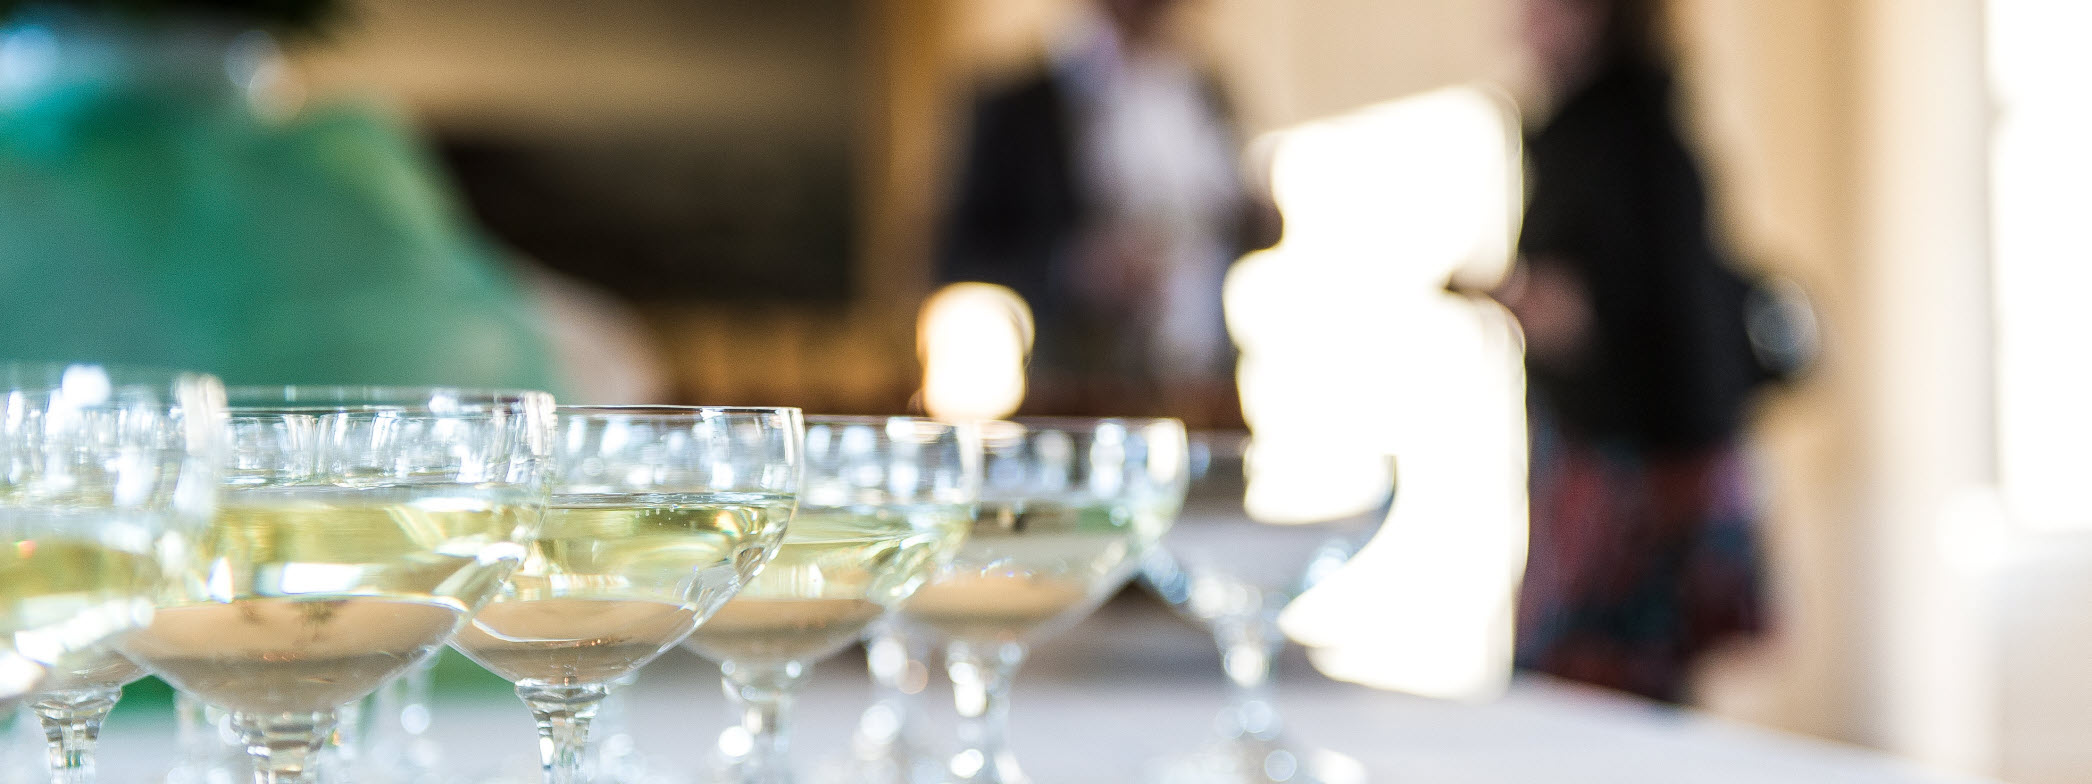 Glas med champagne på ett bord.